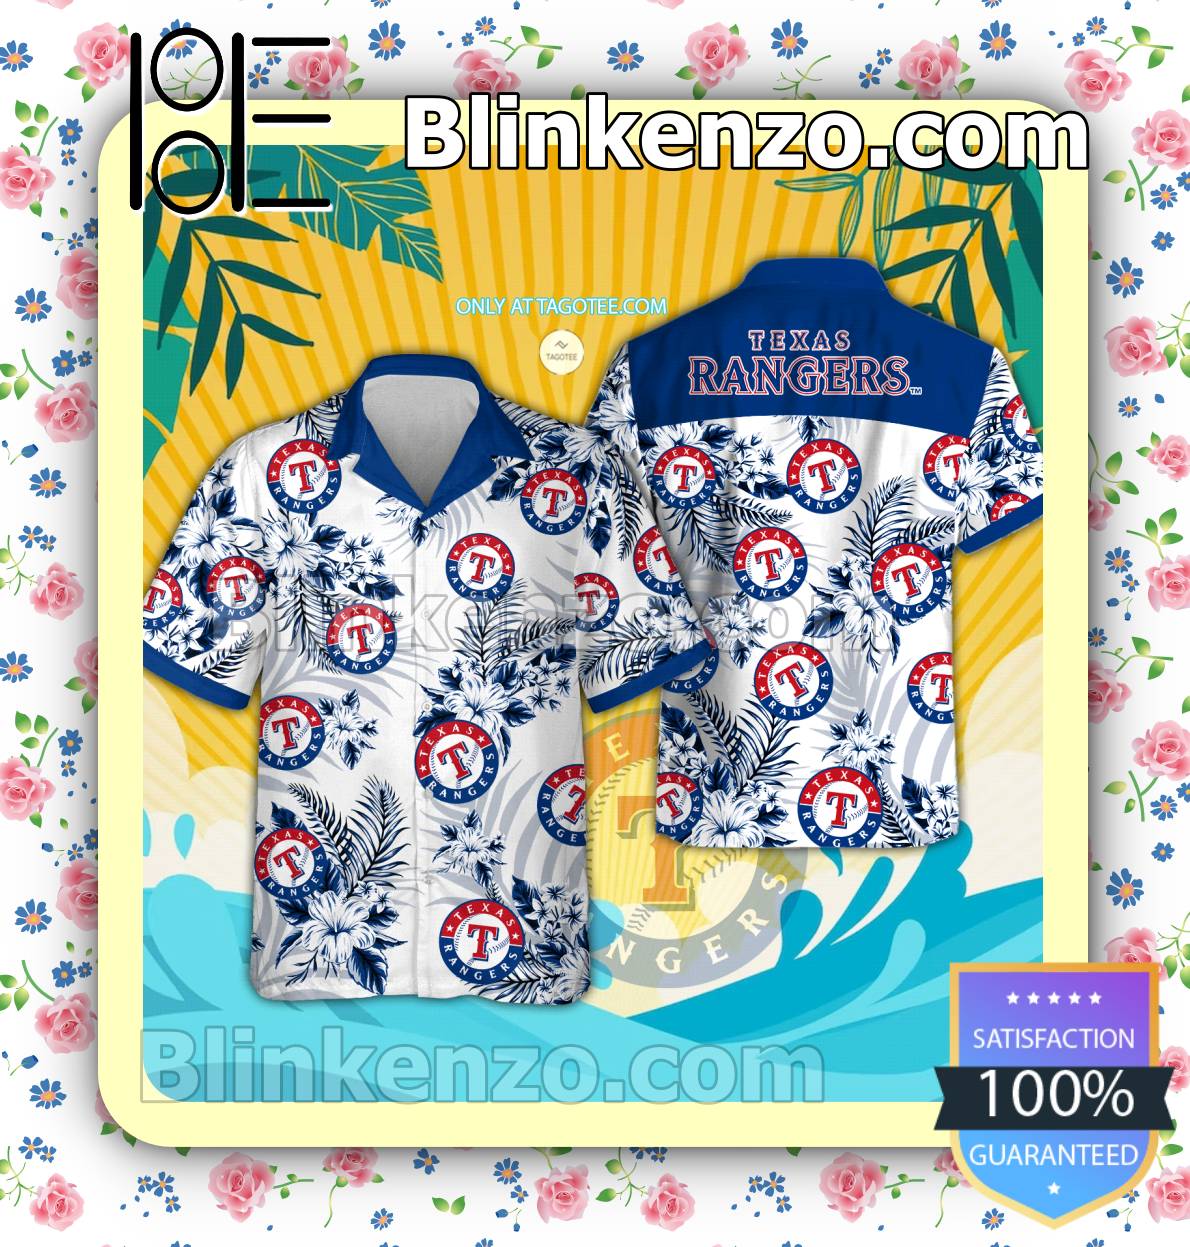 Tottenham Hotspur Logo Hawaiian Shirt And Shorts - BiShop - Tagotee